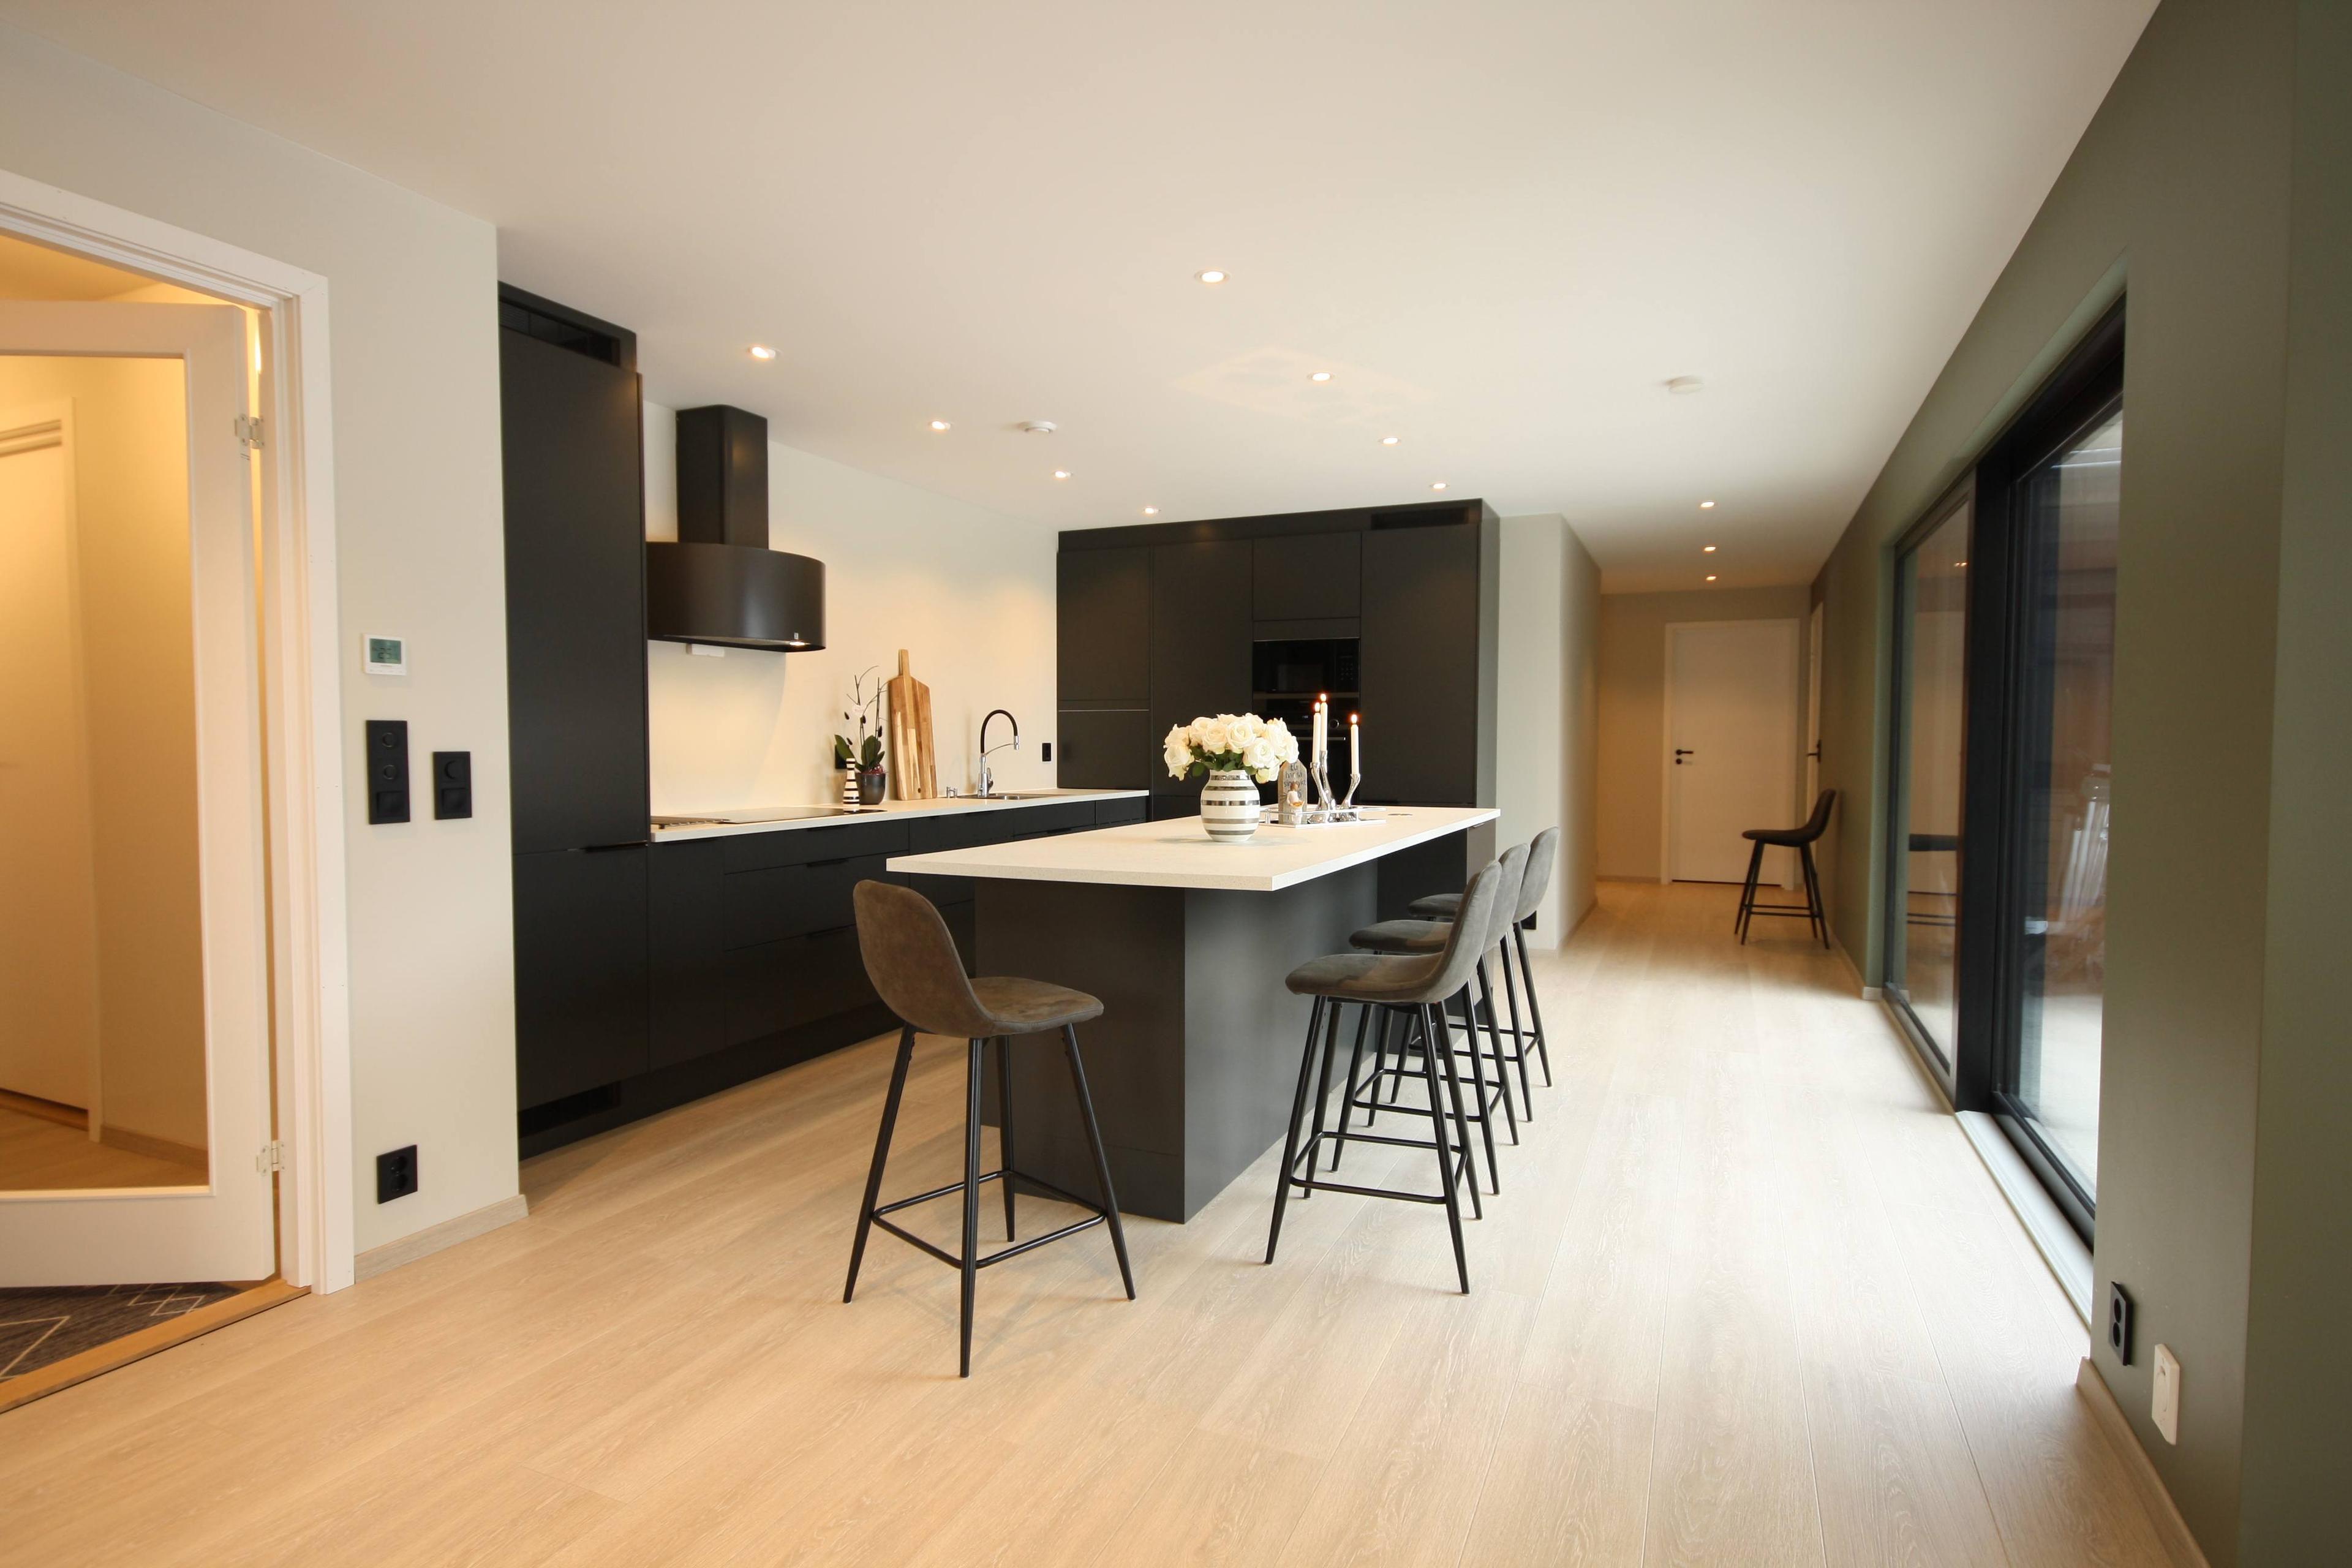 Et sort kjøkken med en kjøkkenøy og fire barstoler